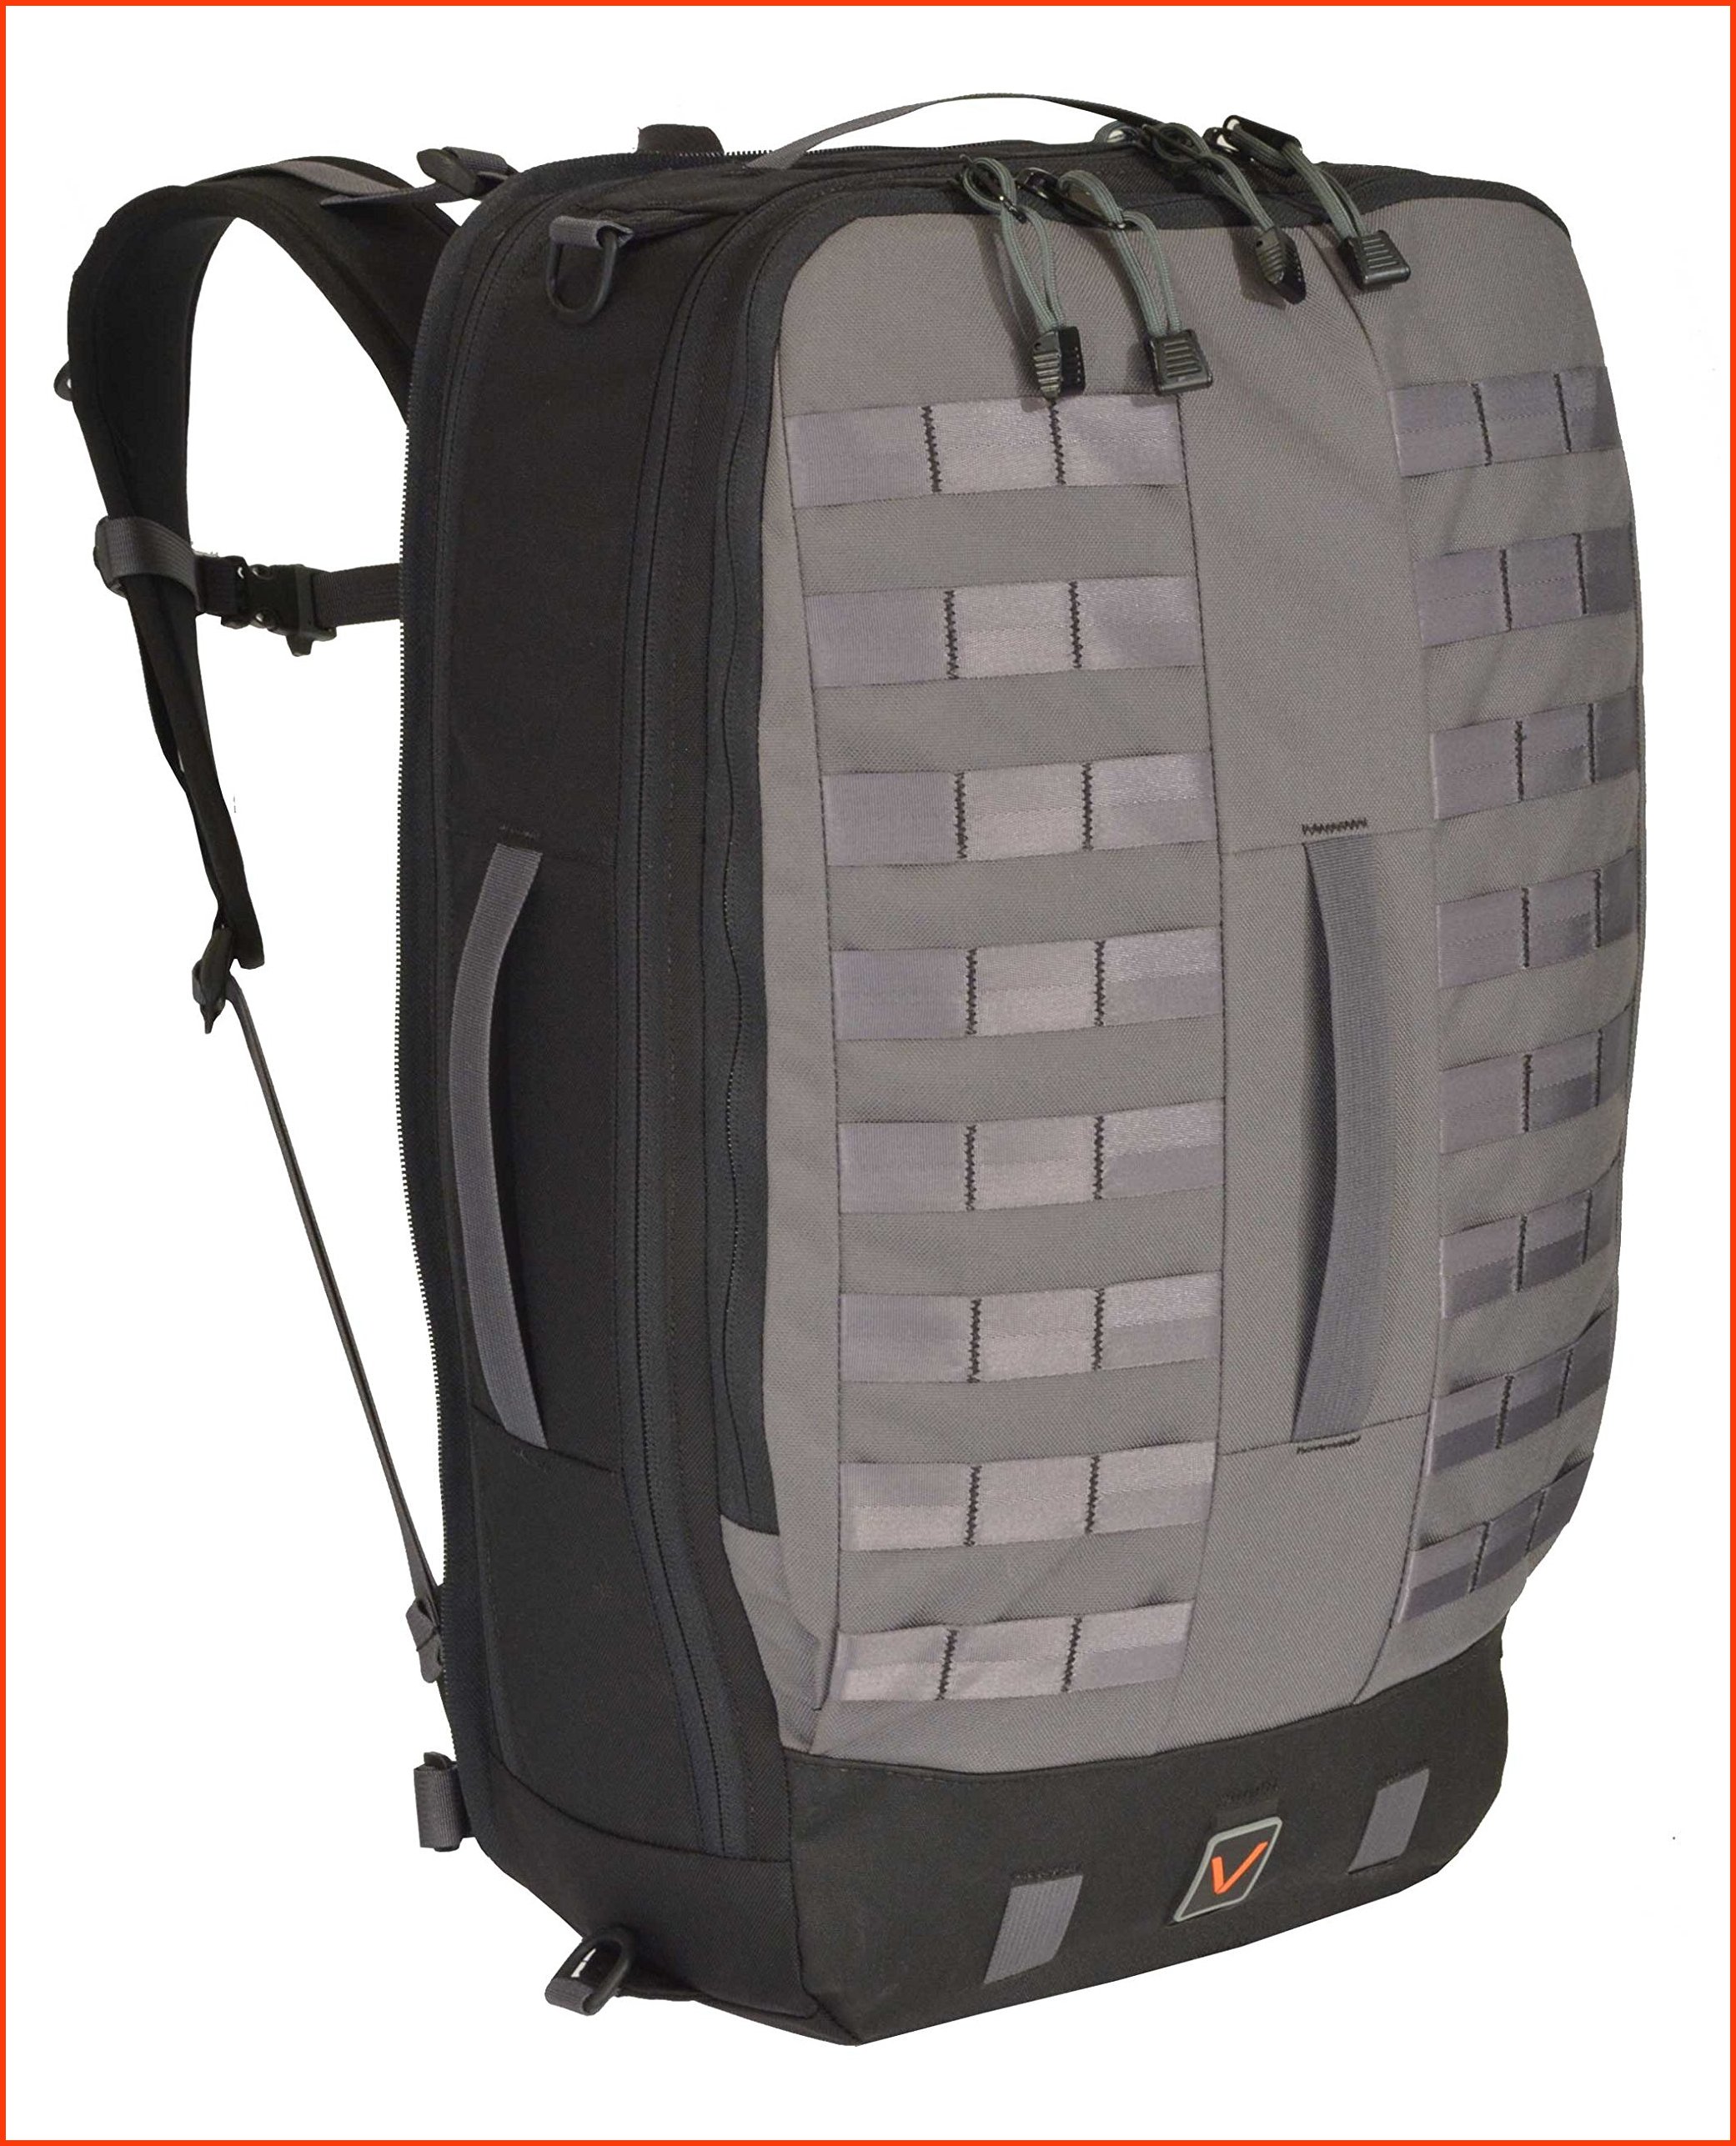 並行輸入品Velix Thrive 35 Convertible Travel Laptop Backpack Grey Mens Large VLX-THR35M-GRY-L